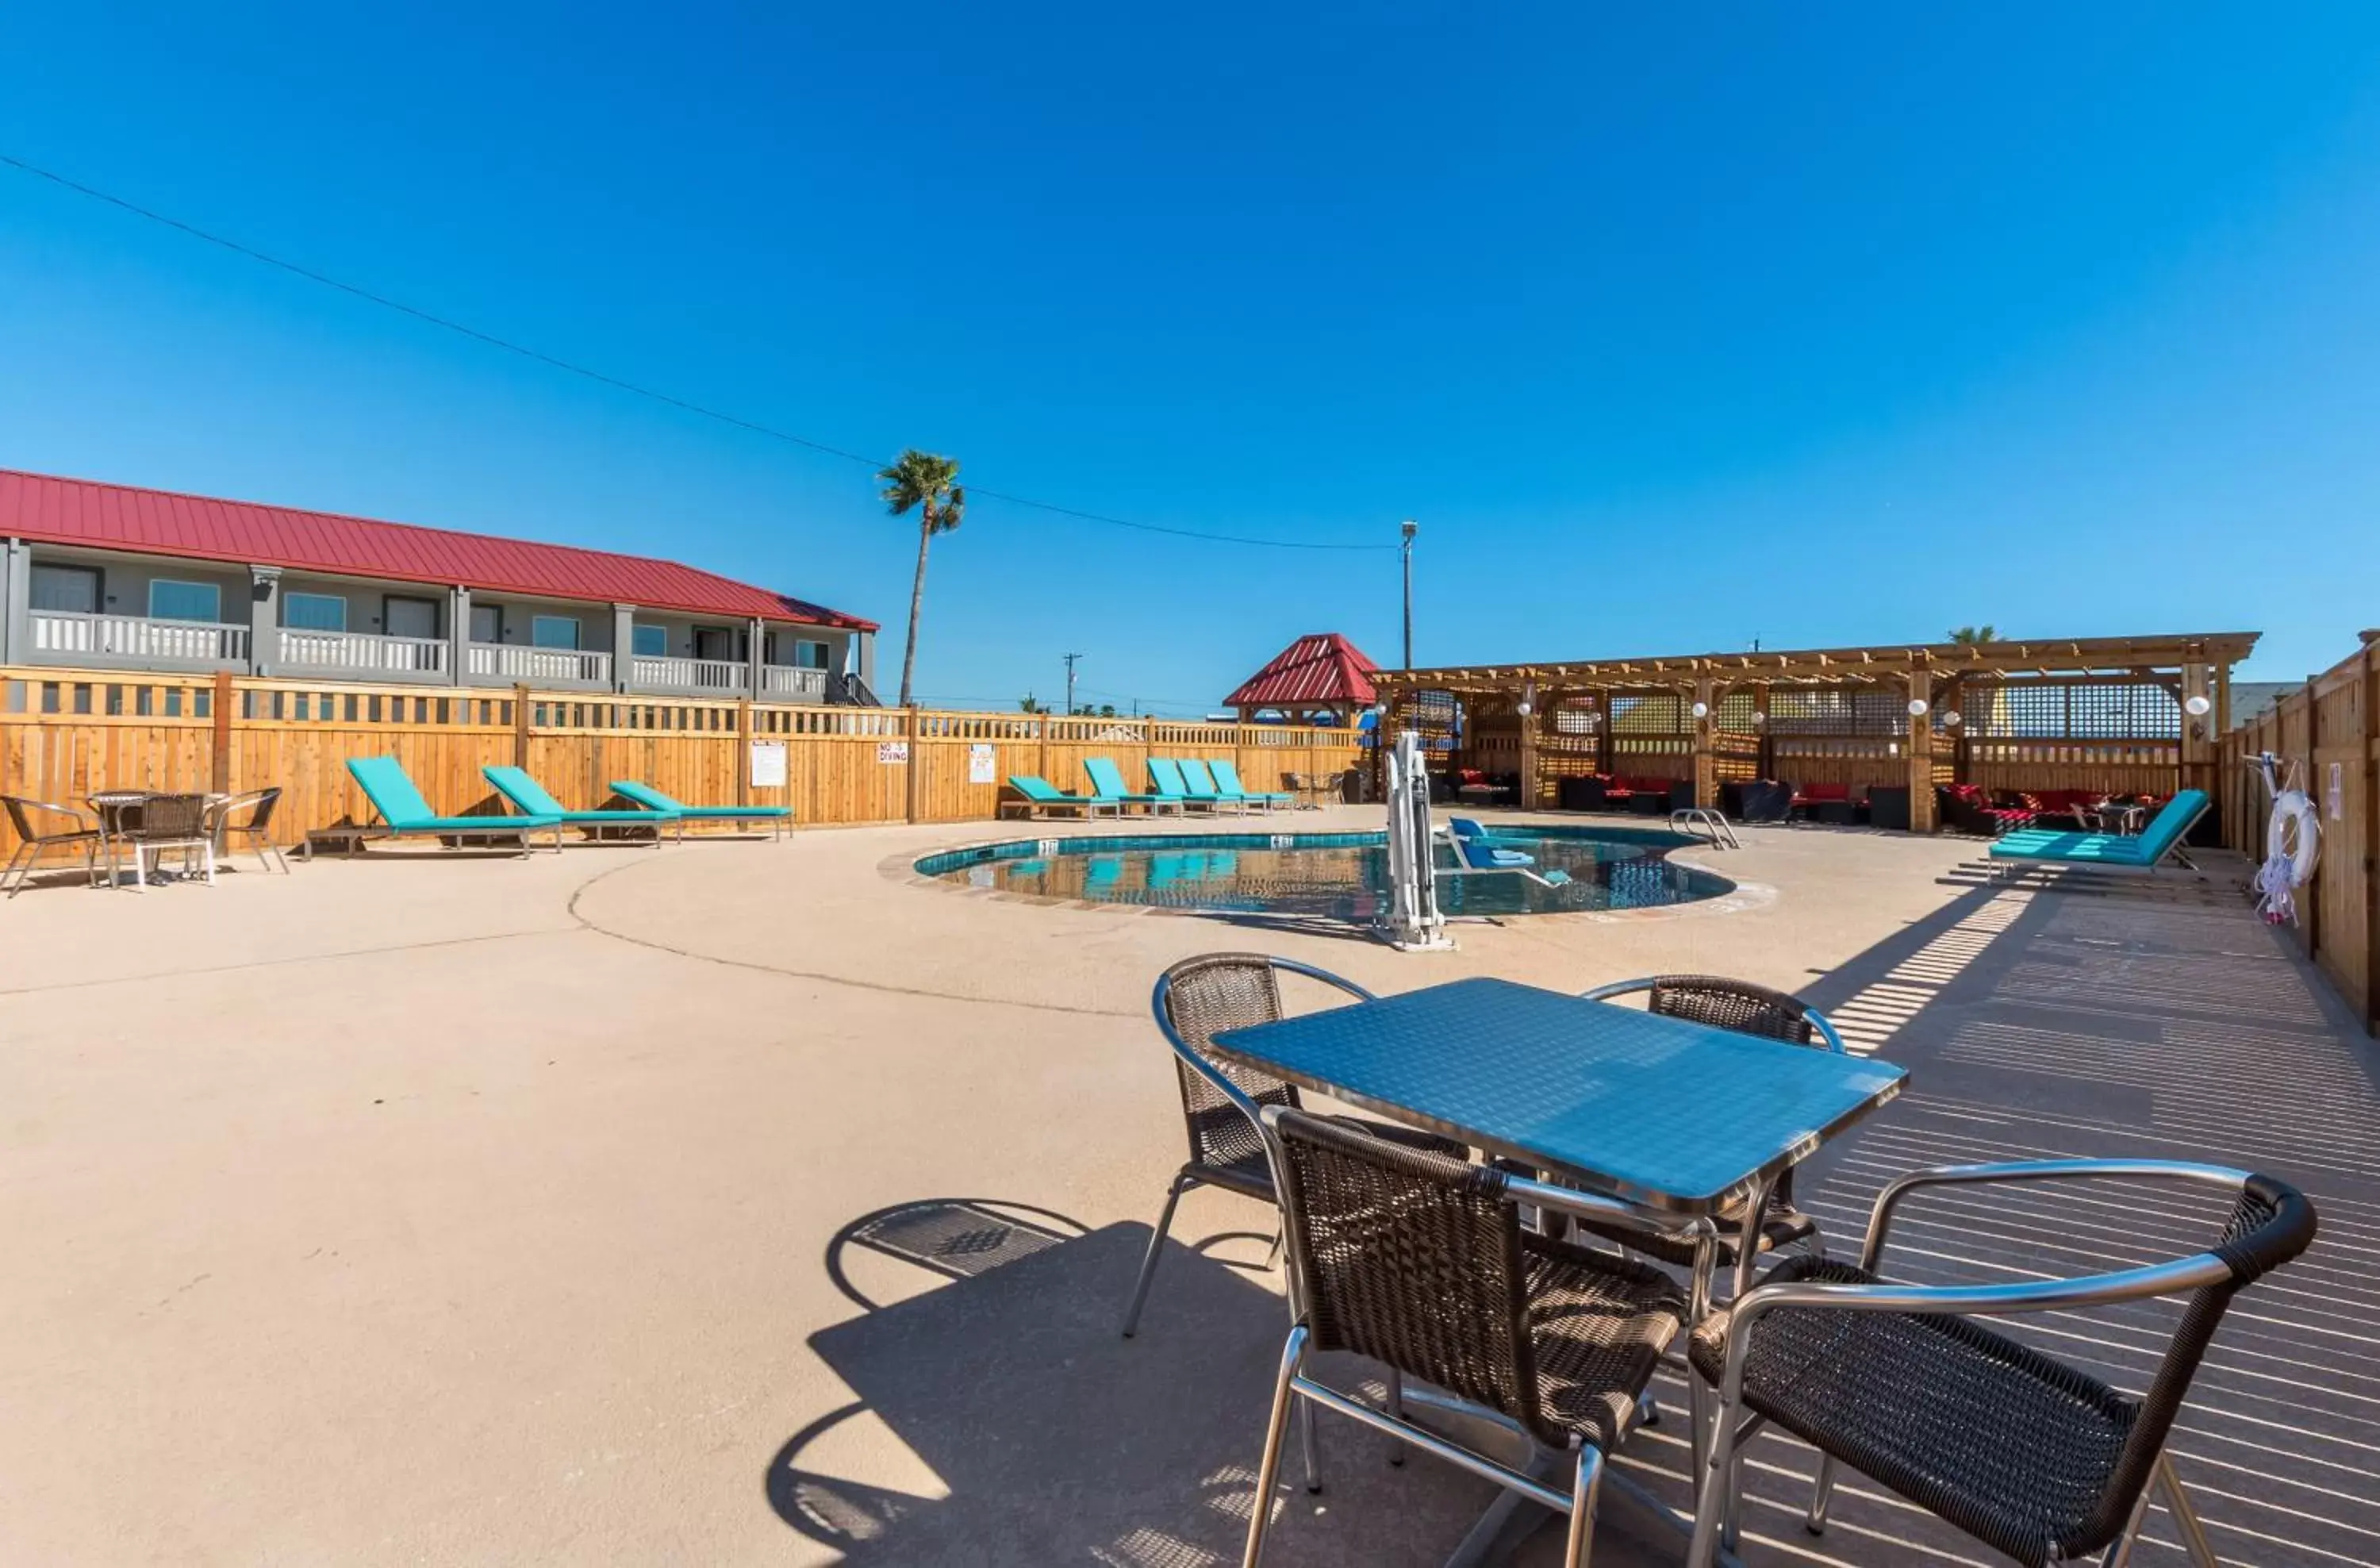 Swimming pool in Ocean's Edge Hotel, Port Aransas,TX